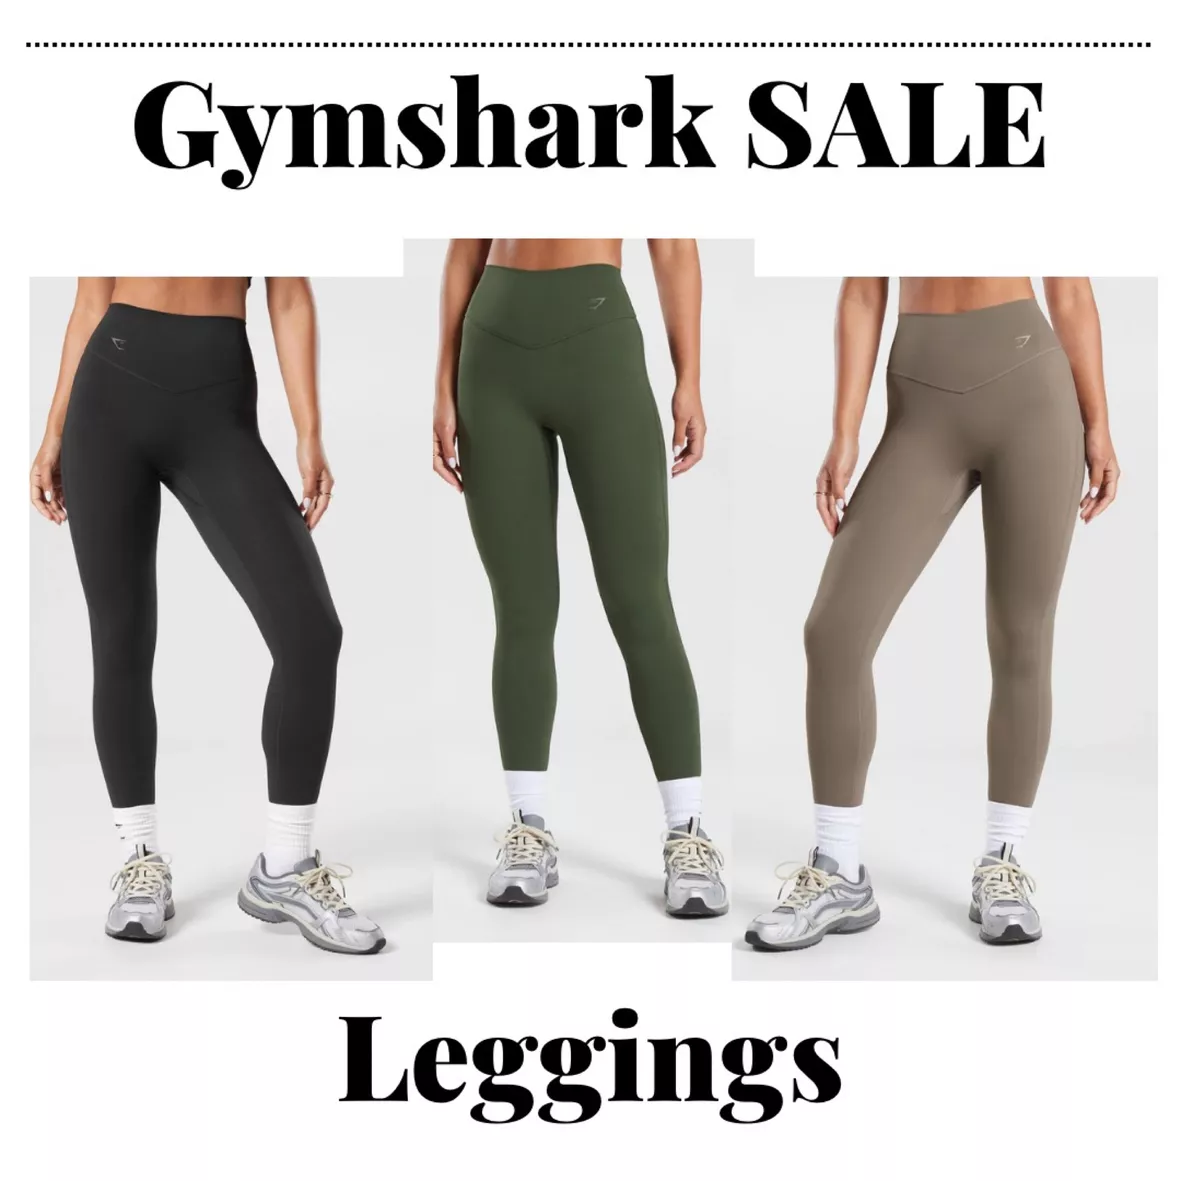 Gymshark Elevate Leggings - Black curated on LTK